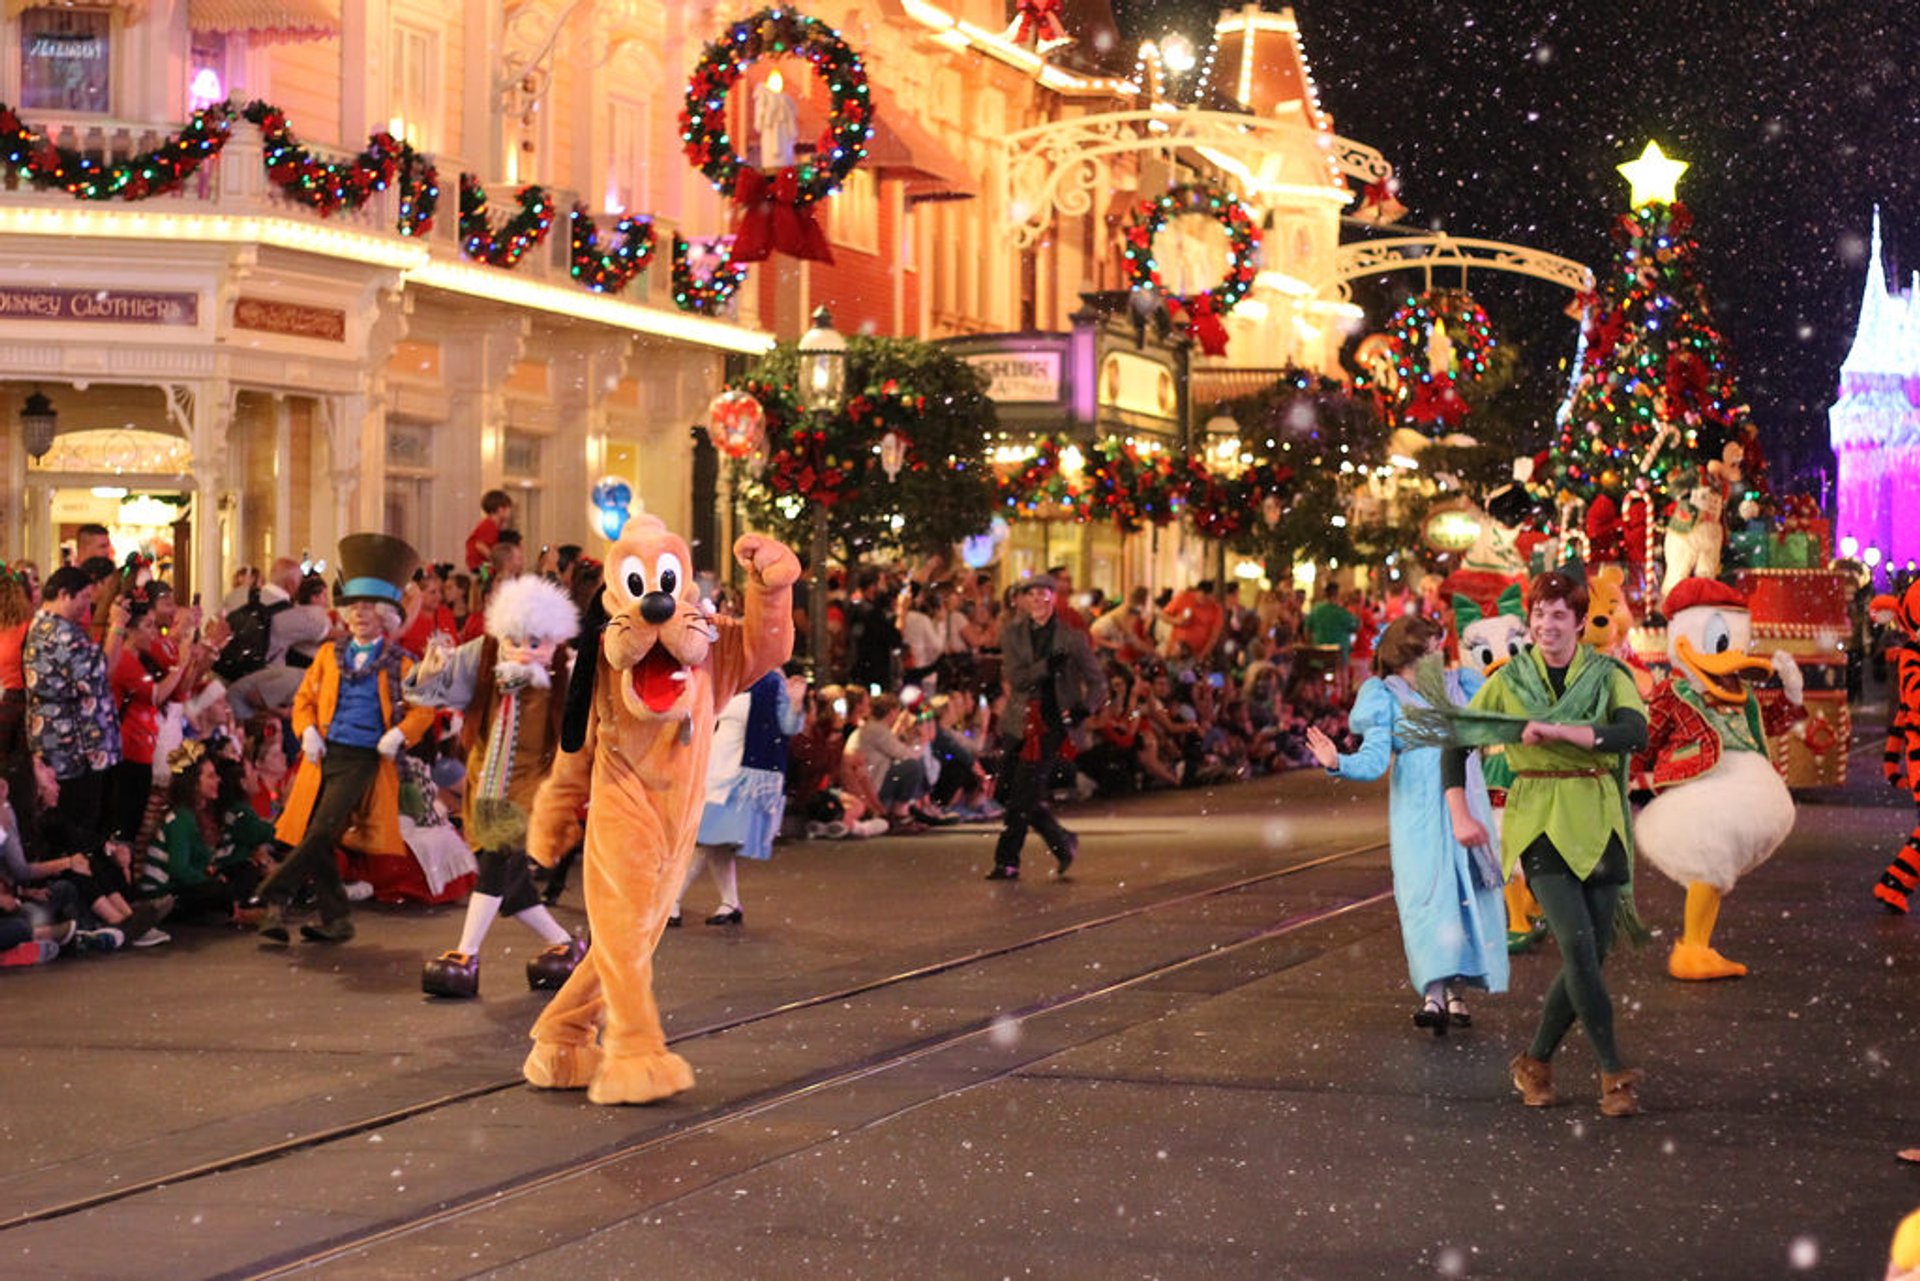 Christmas Holiday Magic at Disney World 2020 in Florida